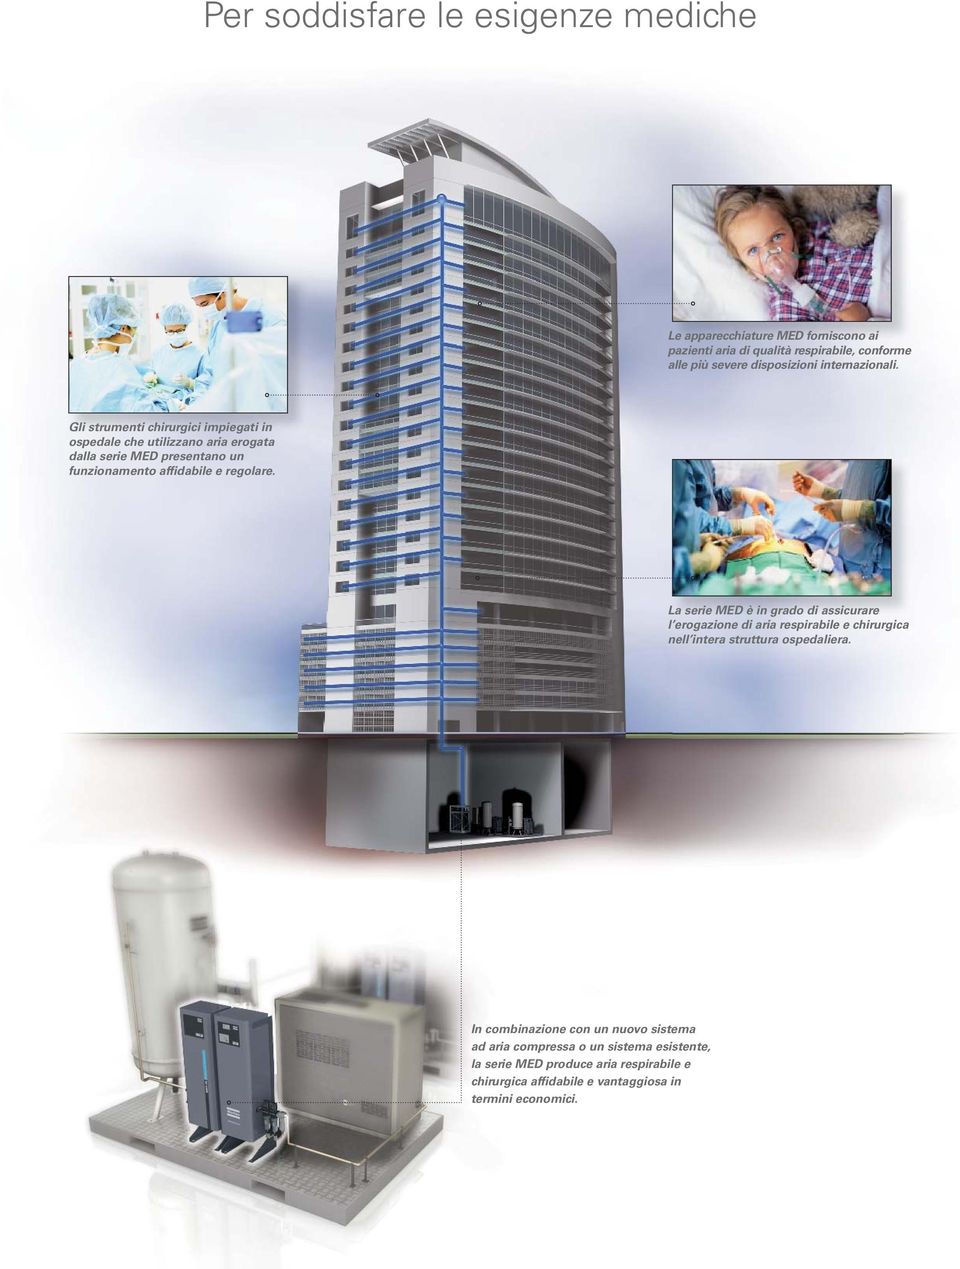 Gli strumenti chirurgici impiegati in ospedale che utilizzano aria erogata dalla serie MED presentano un funzionamento affidabile e regolare.